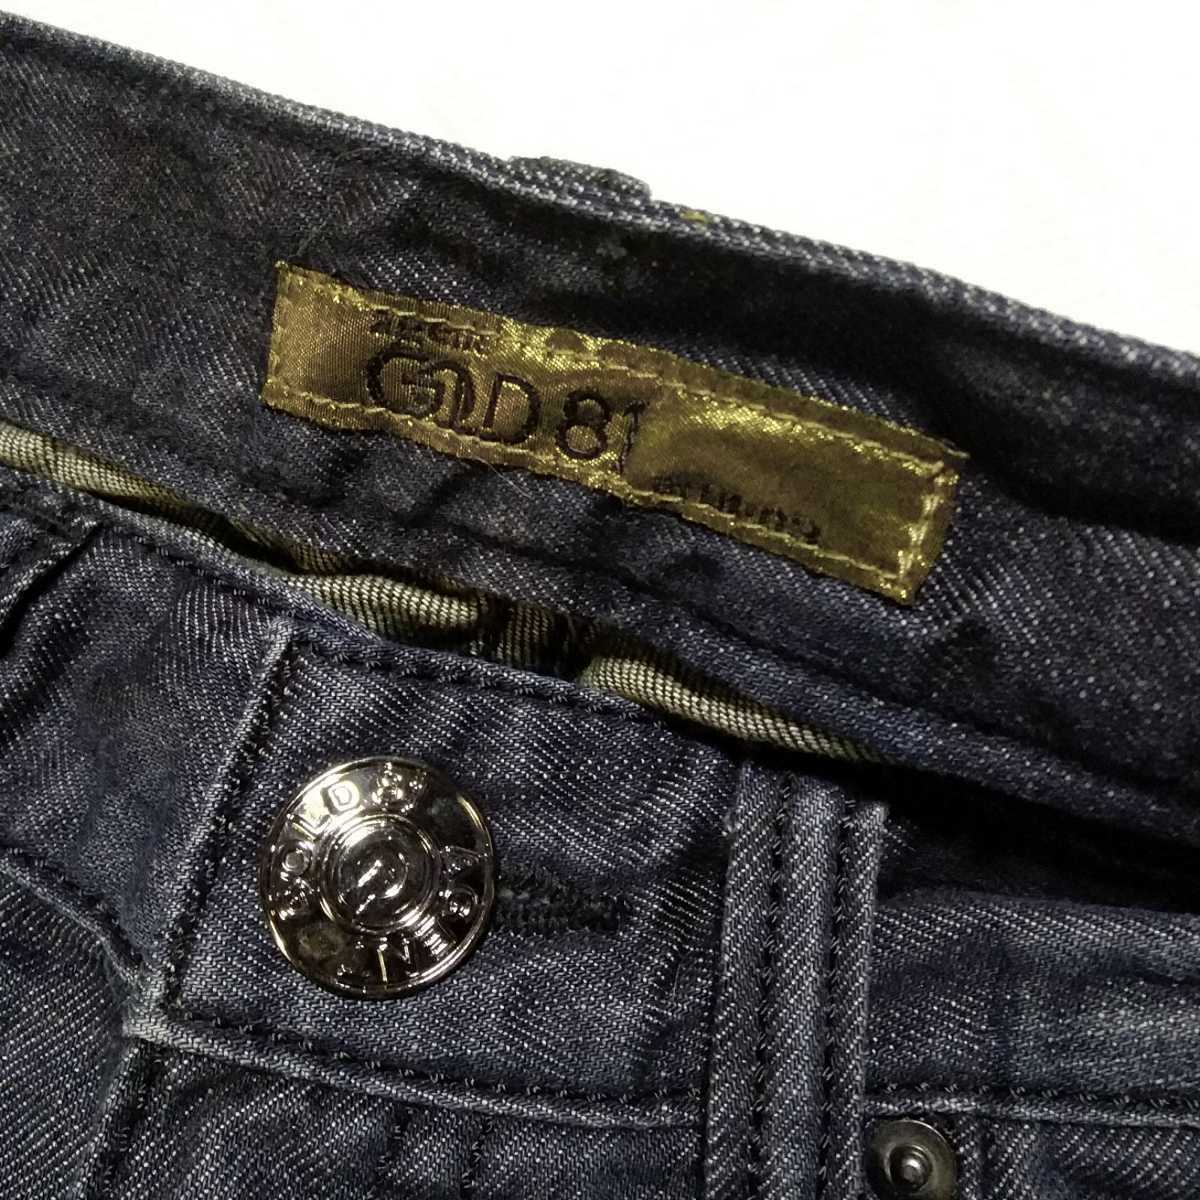  новый товар 13440 иен 26 LB-03 GOLD ботинки cut джинсы высокий каблук Love Boat shooplala план REDPEPPER красный перец True Religion 